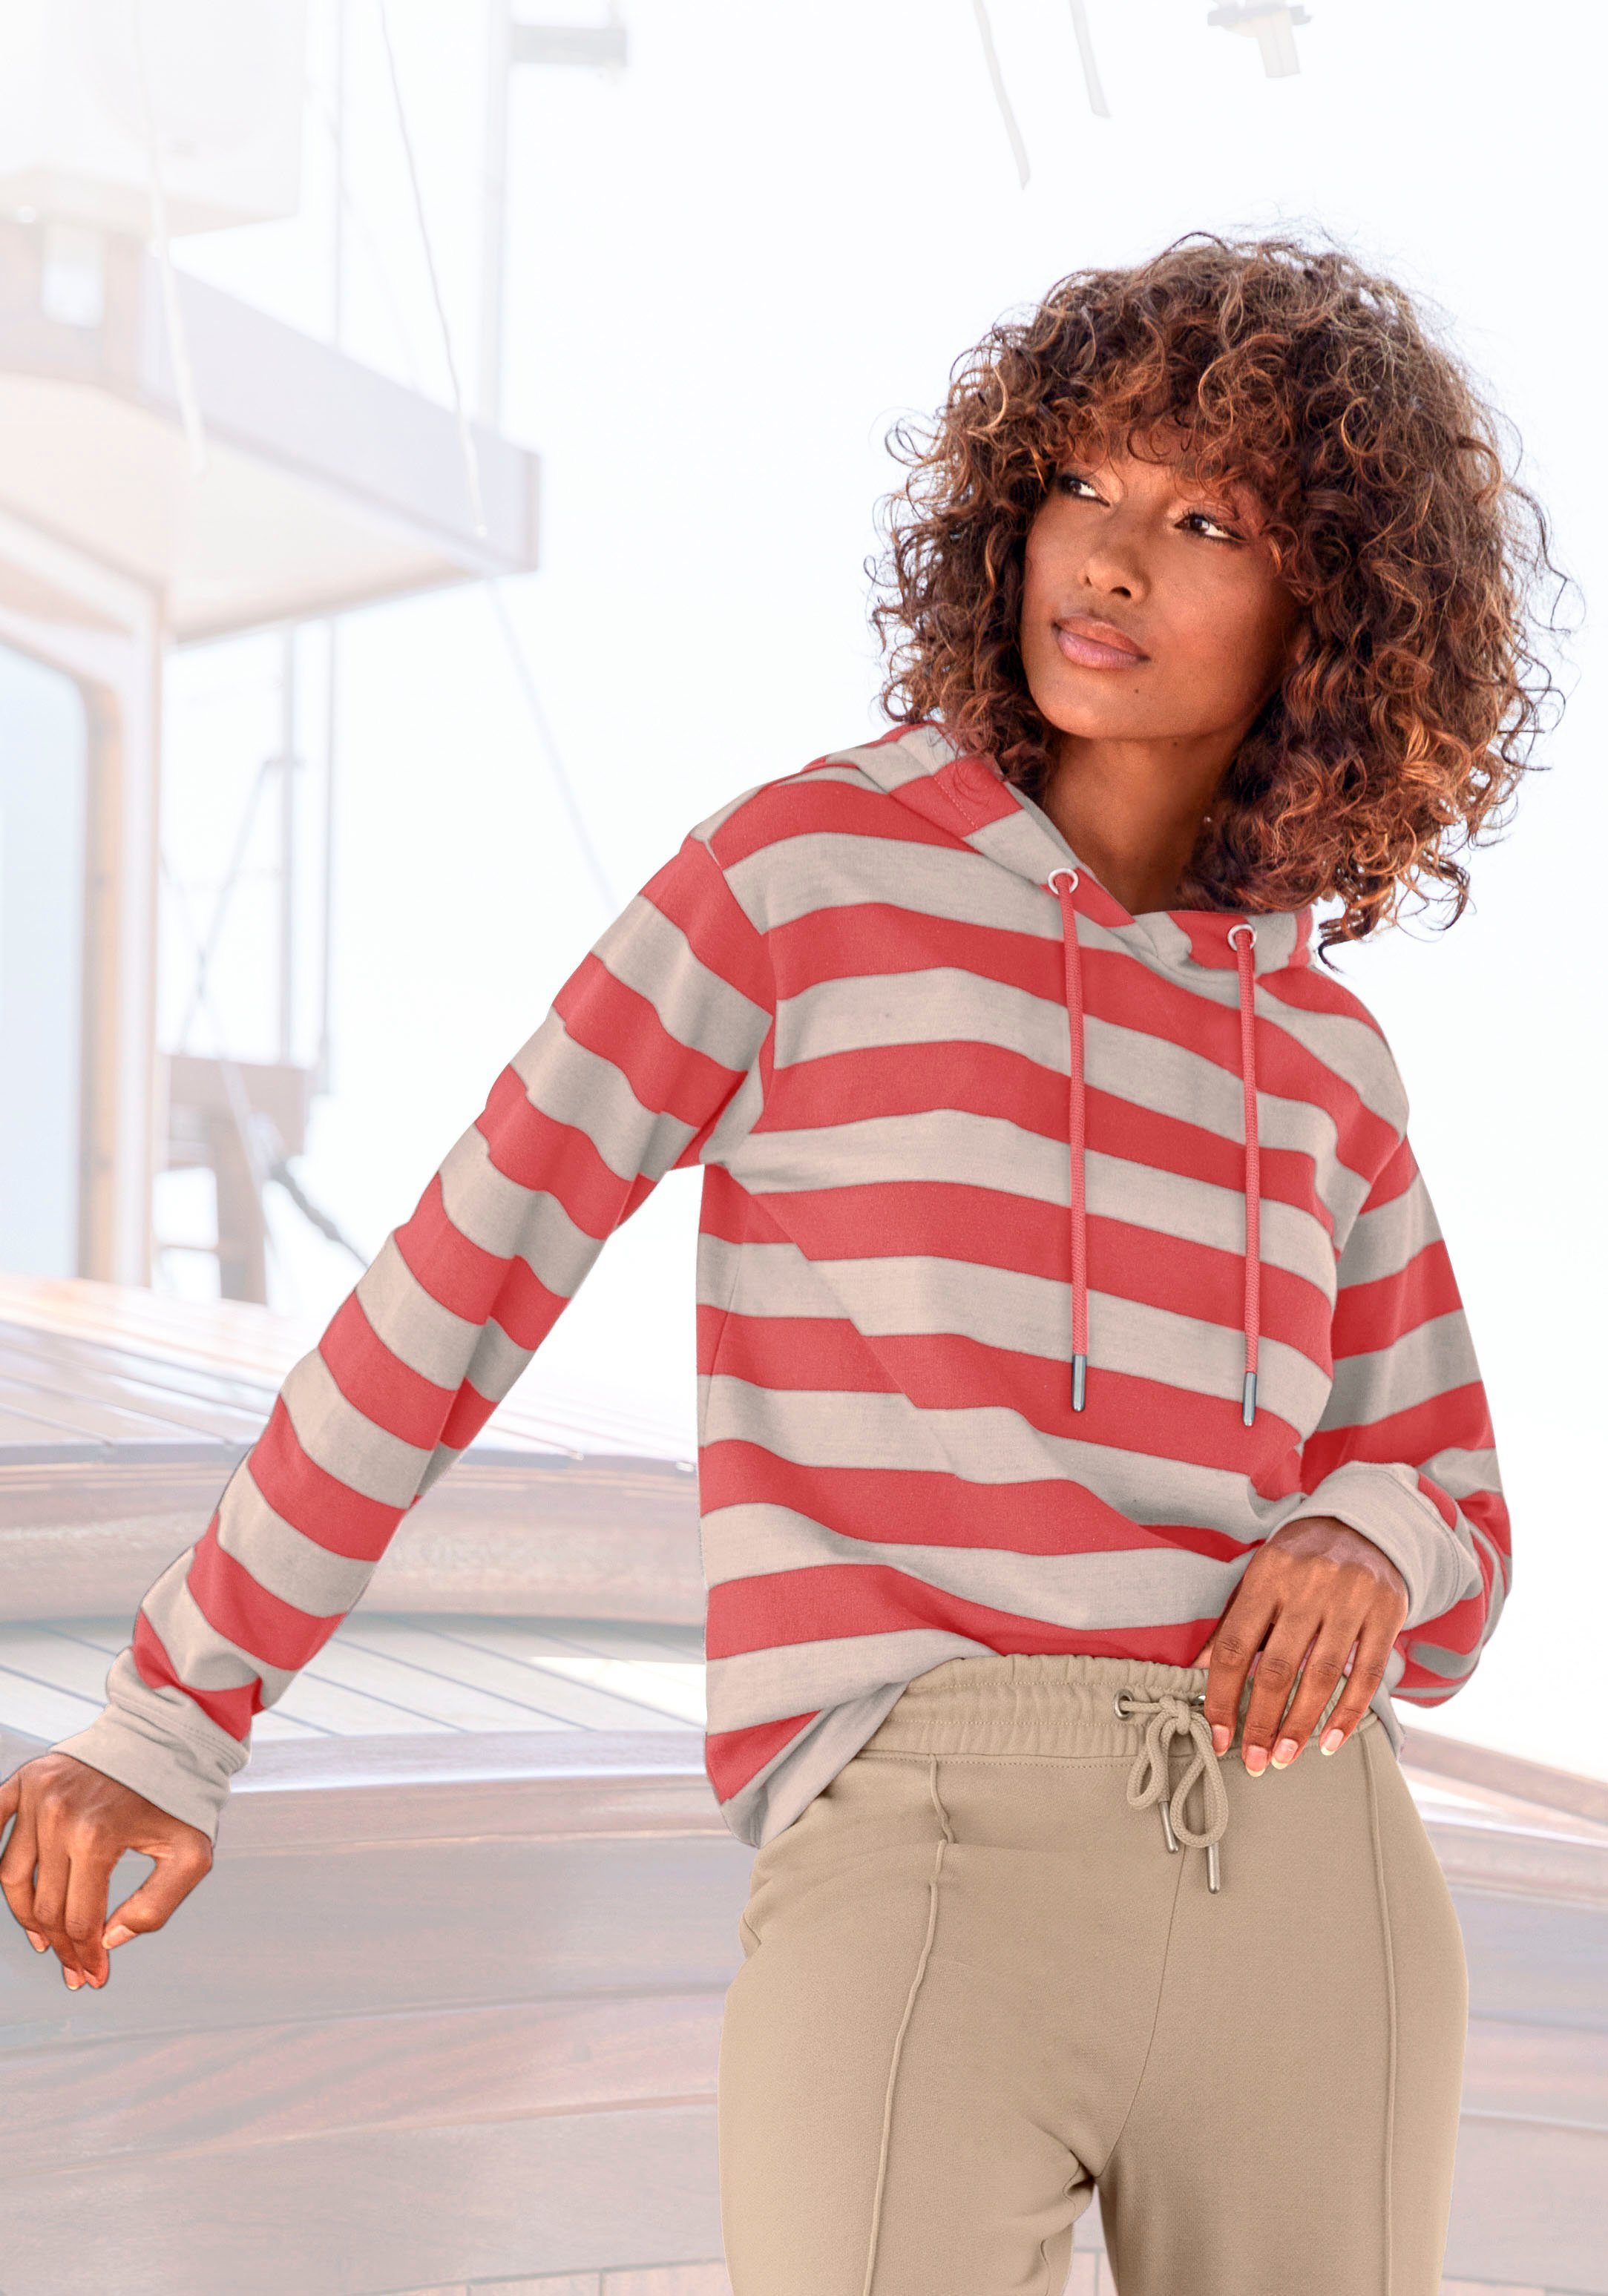 Rote Pullover für Damen online kaufen | OTTO